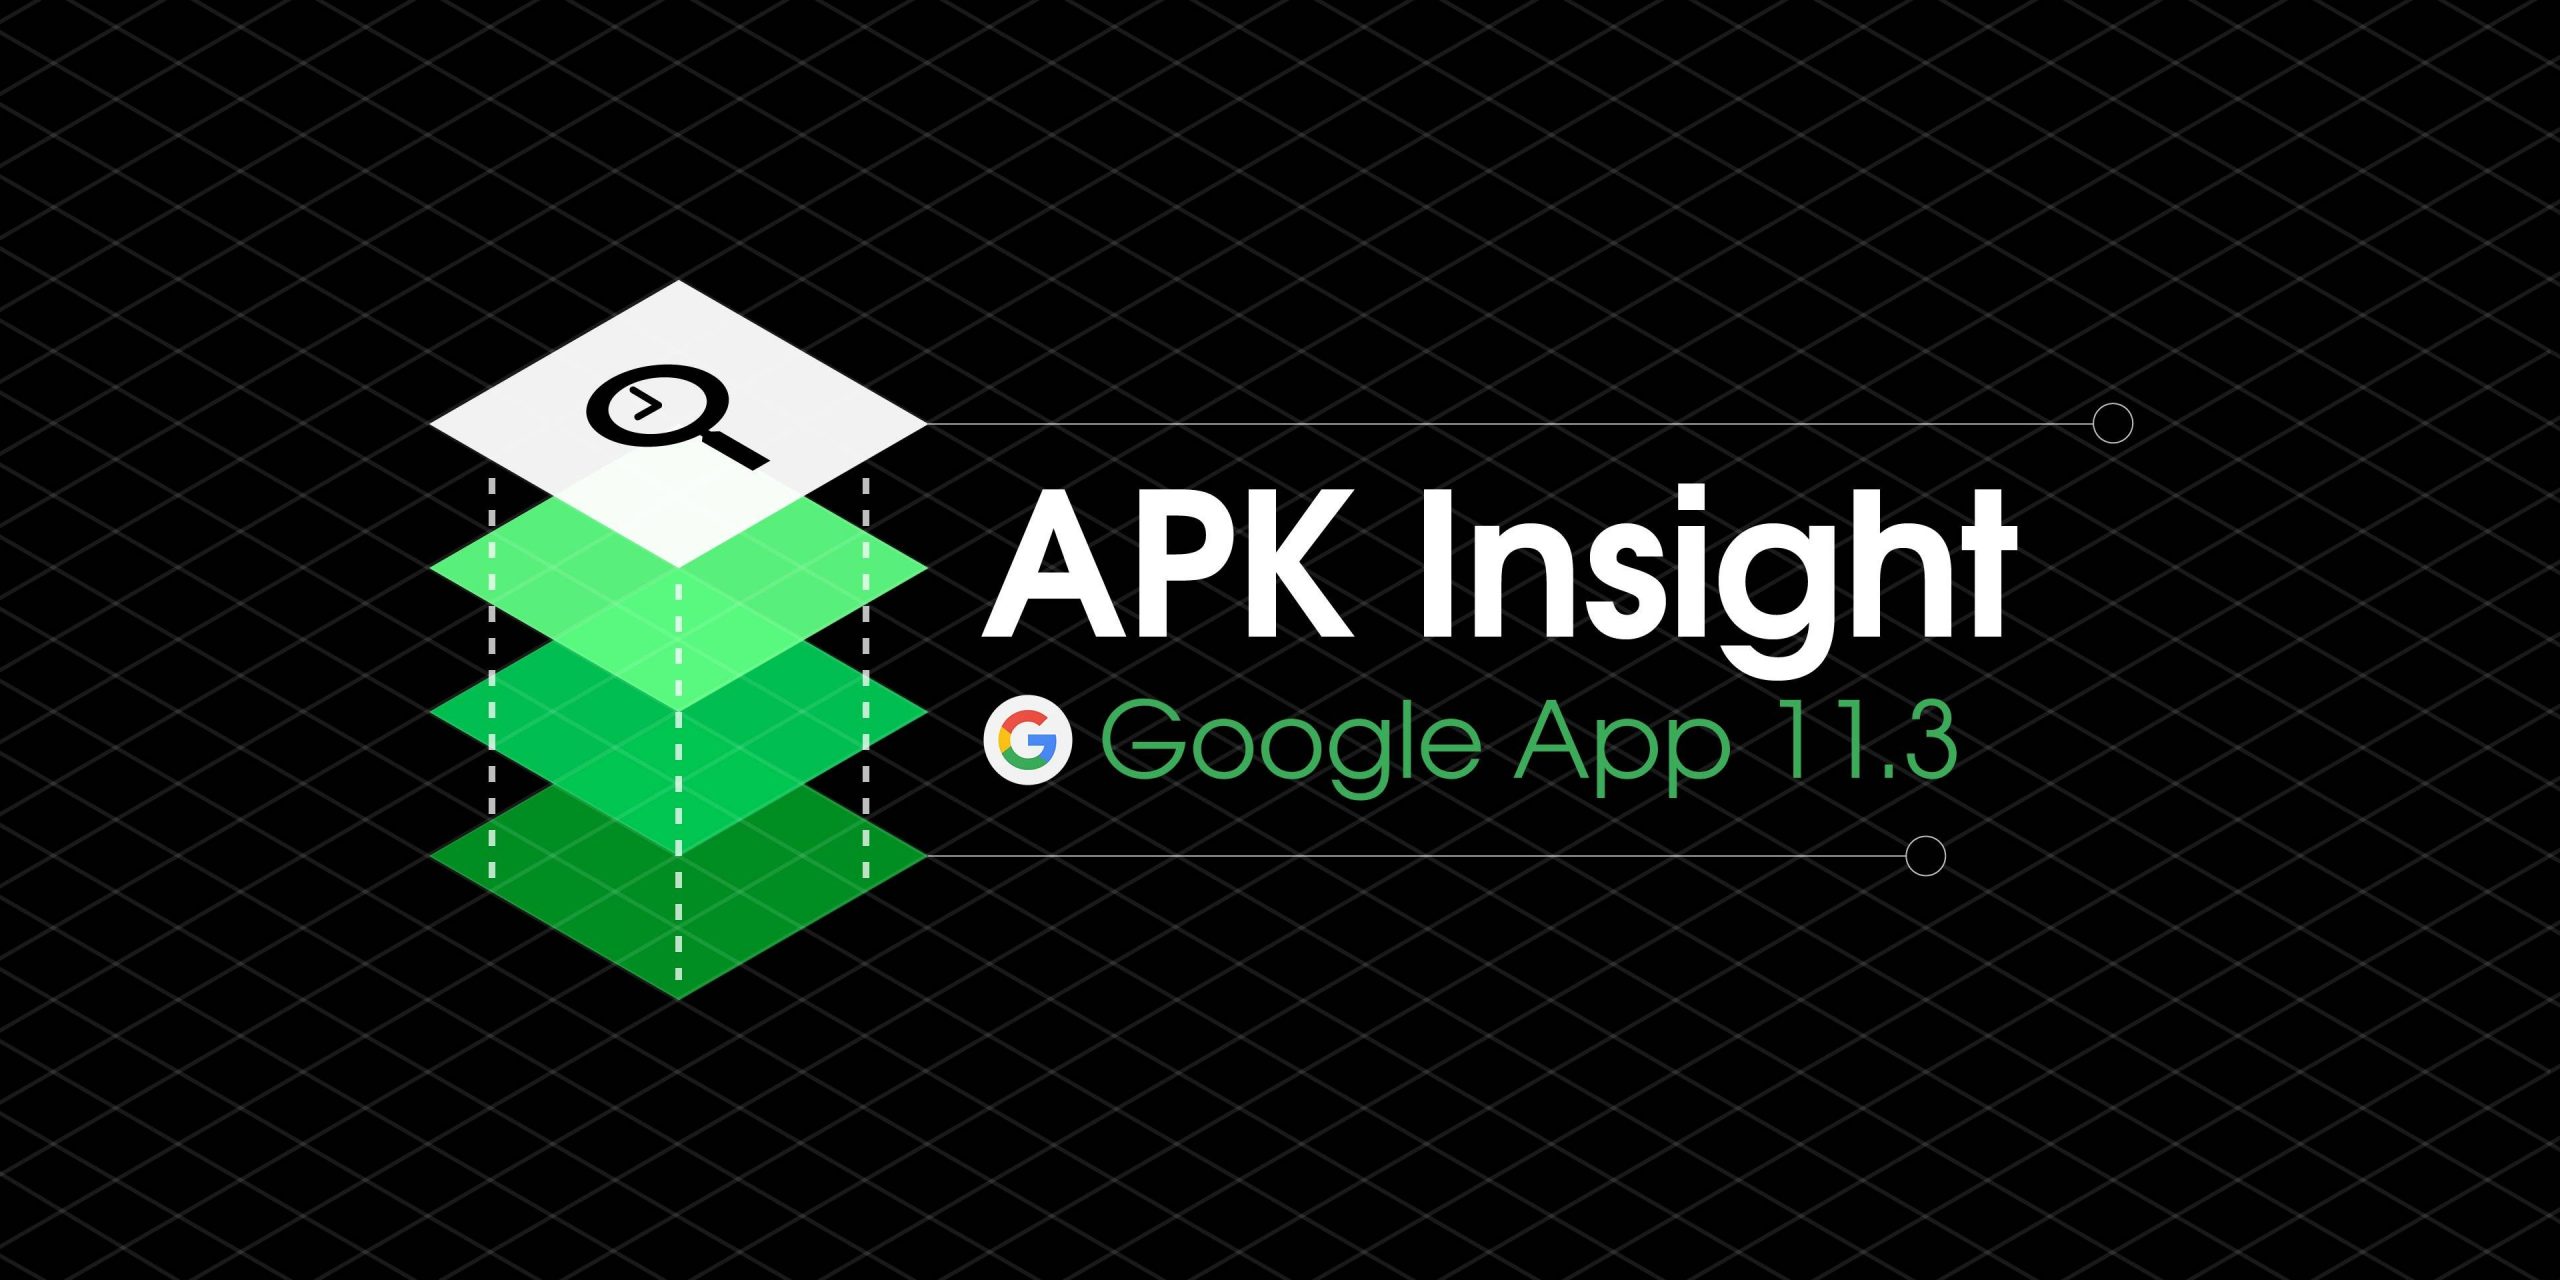 Google app 11.3 prepara tradução offline da lente, sugestões de fotos para assistentes [APK Insight]